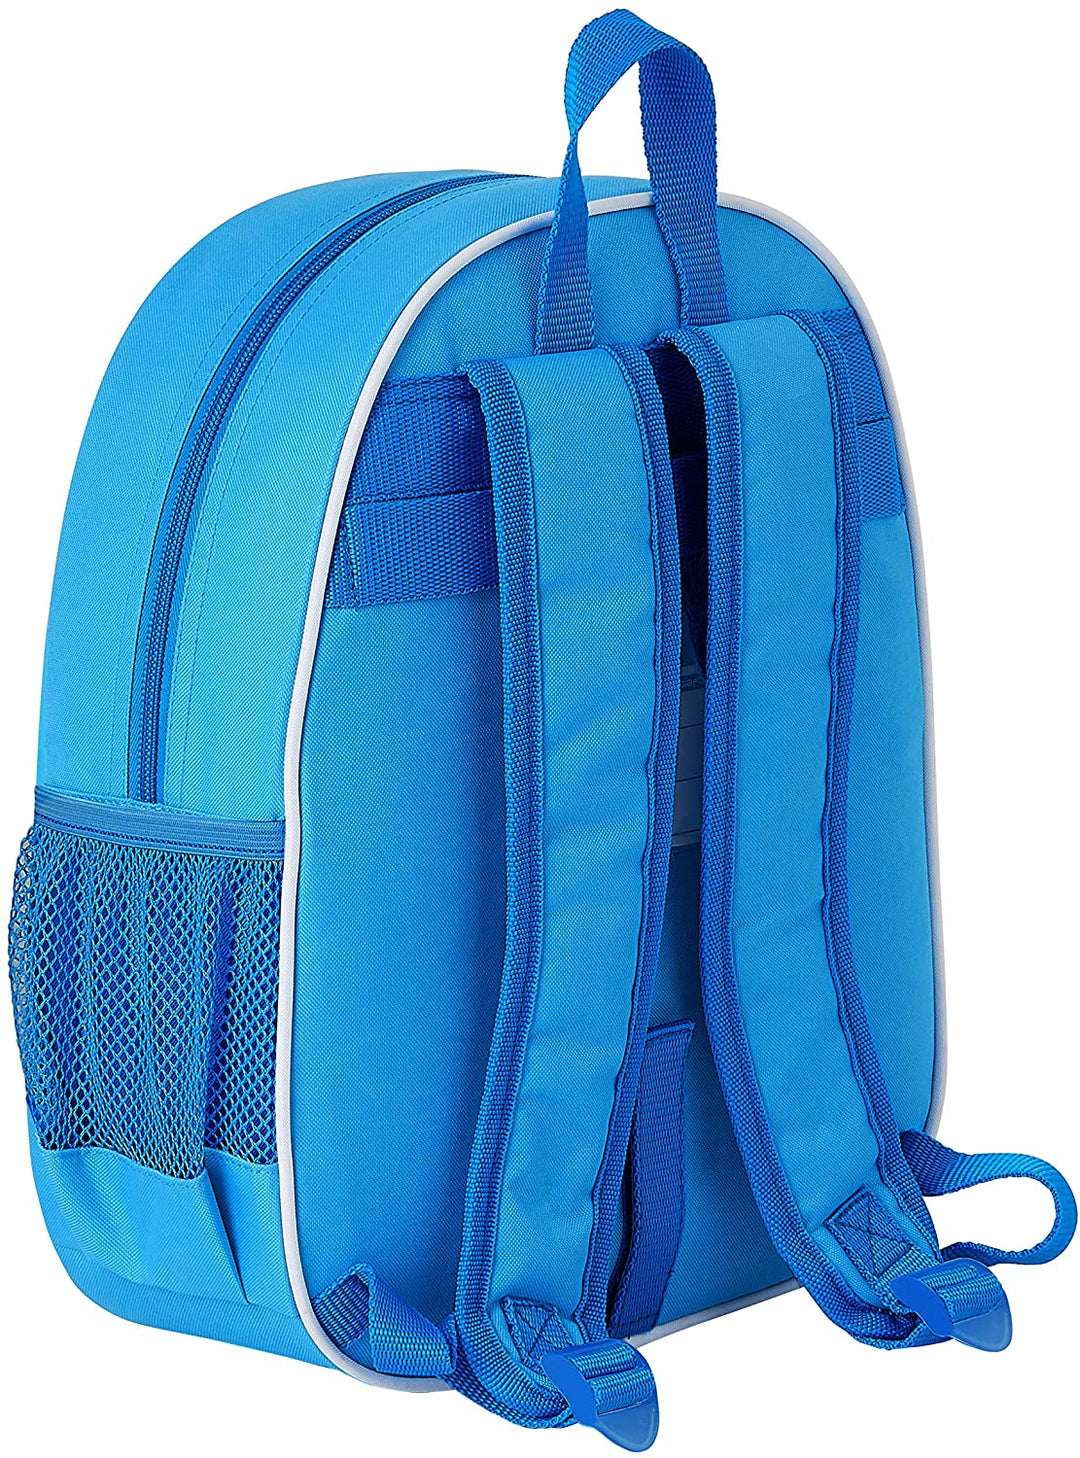 Safta M890 Unisex Children's Backpack